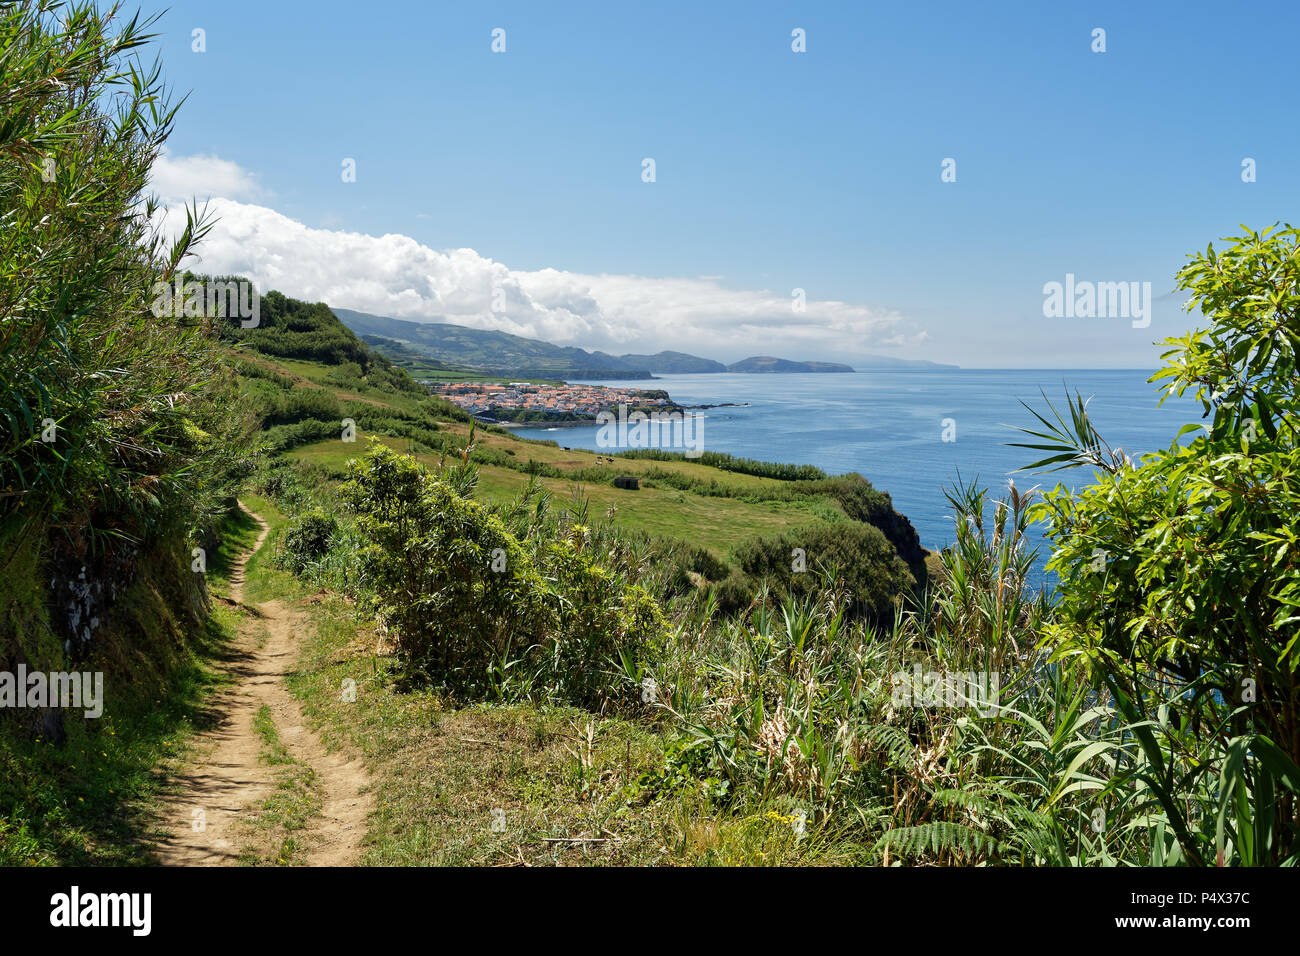 Passeggiata costiera sulle Azzorre Isola di Sao Miguel in tempo soleggiato, la vista segue il sentiero oltre i pascoli di un villaggio e le montagne con le nuvole - Basso Foto Stock